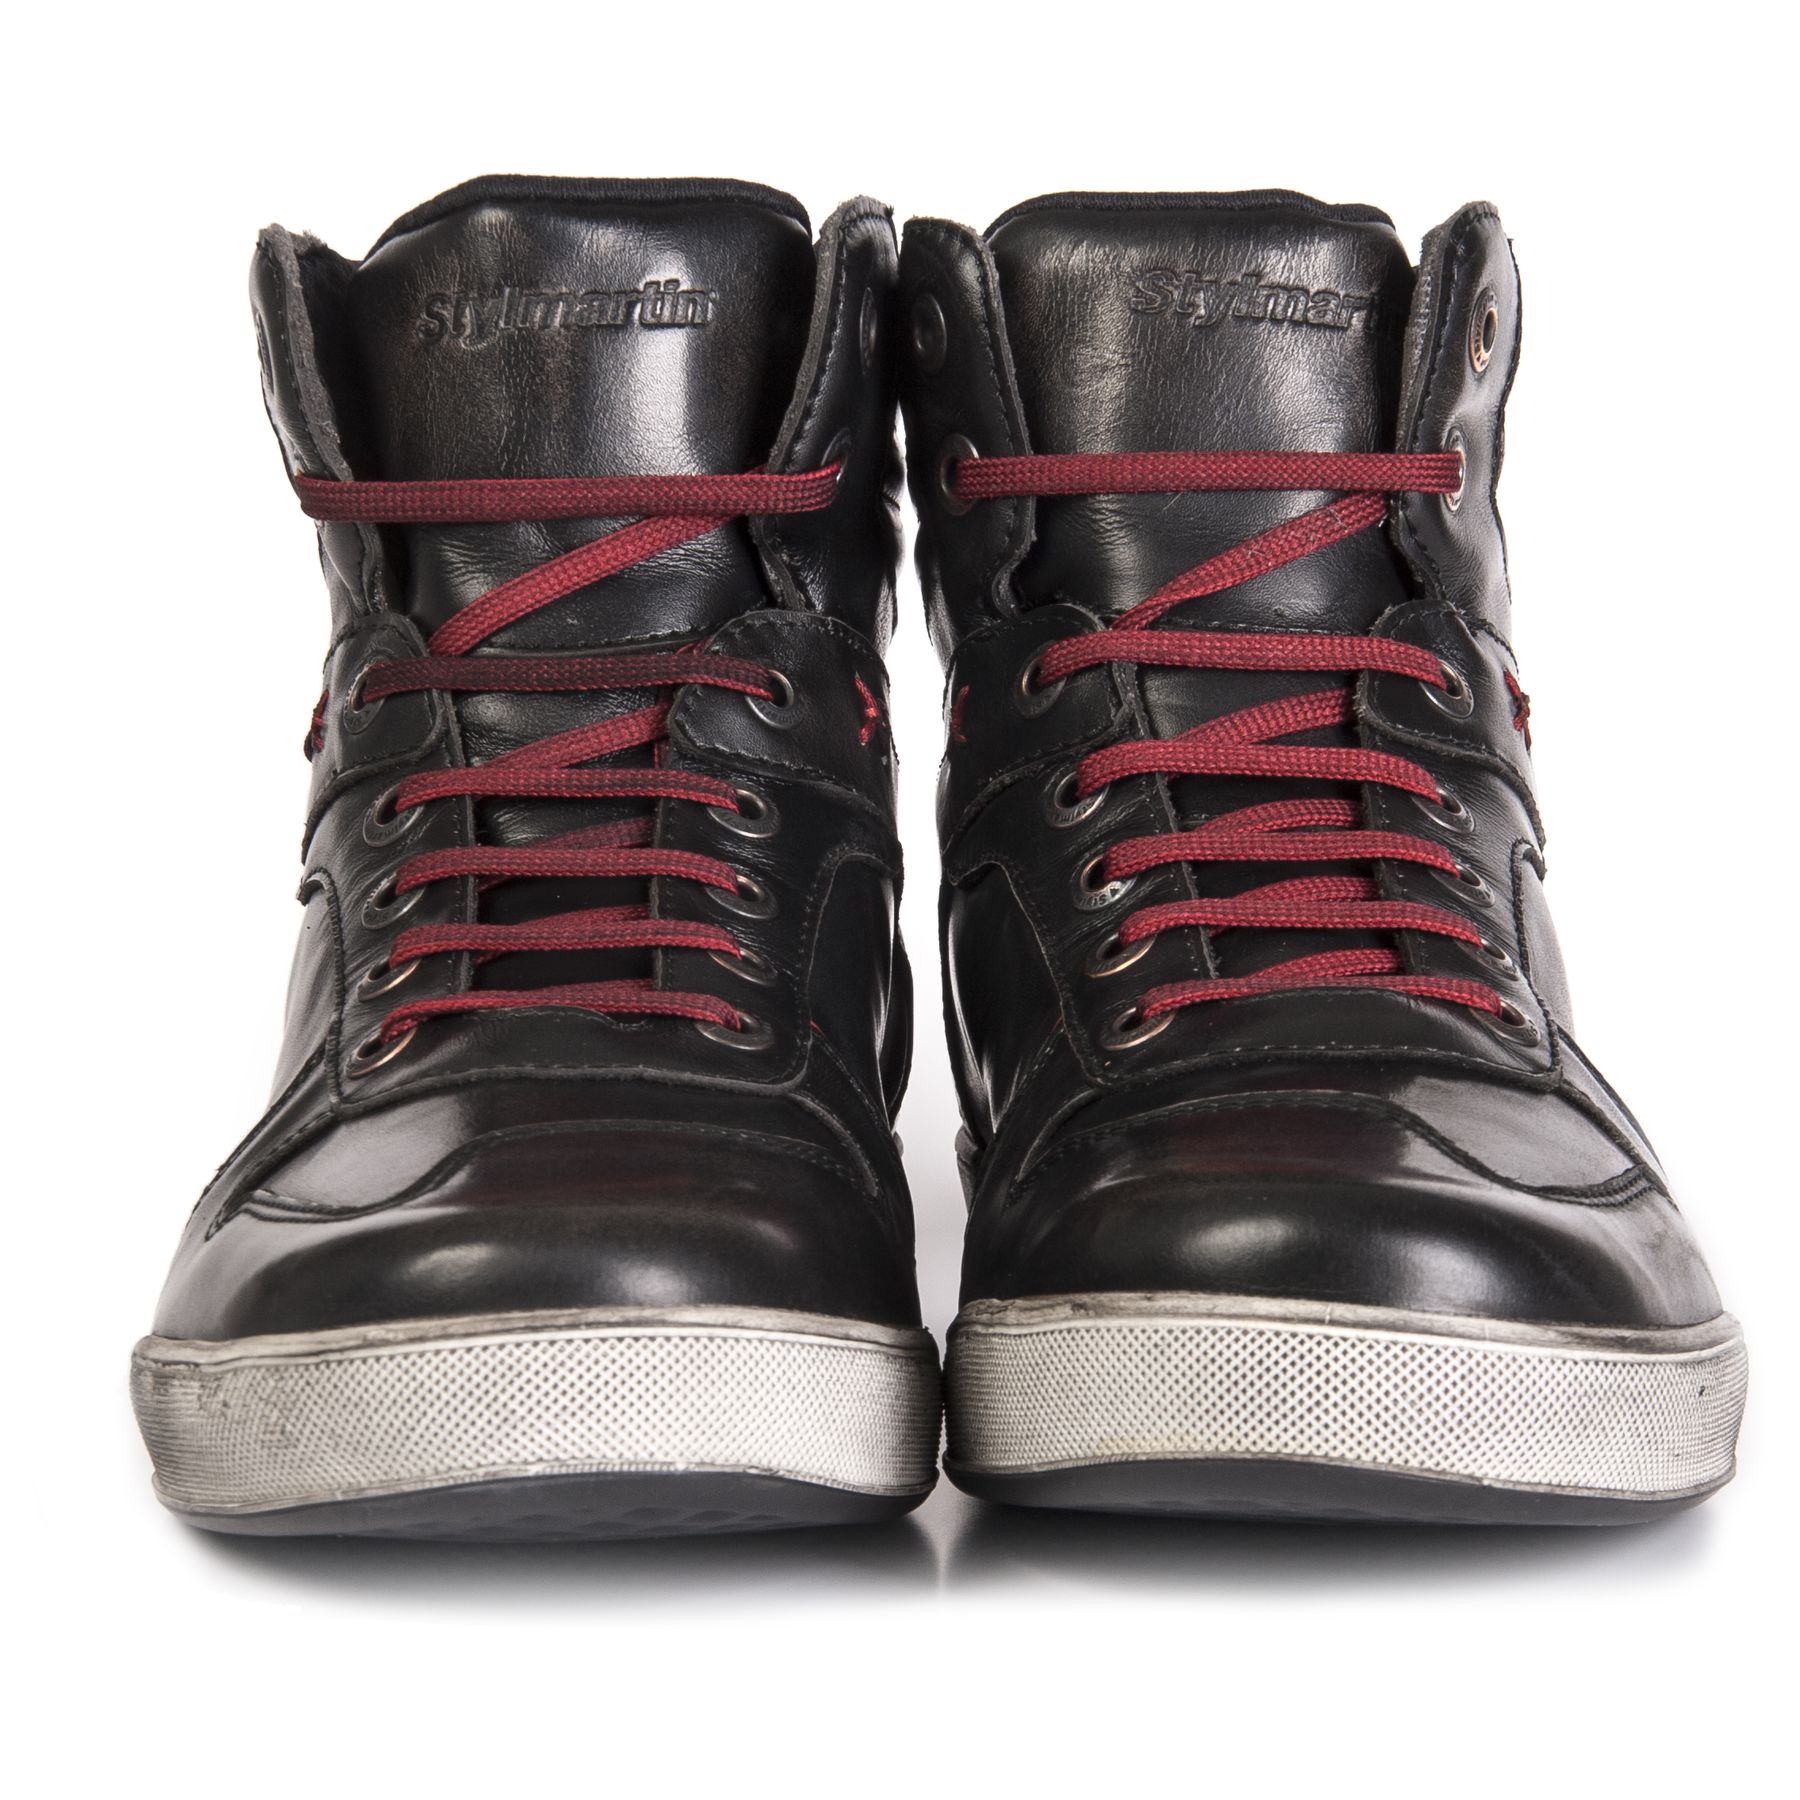 Stylmartin Iron WP Boots - Black